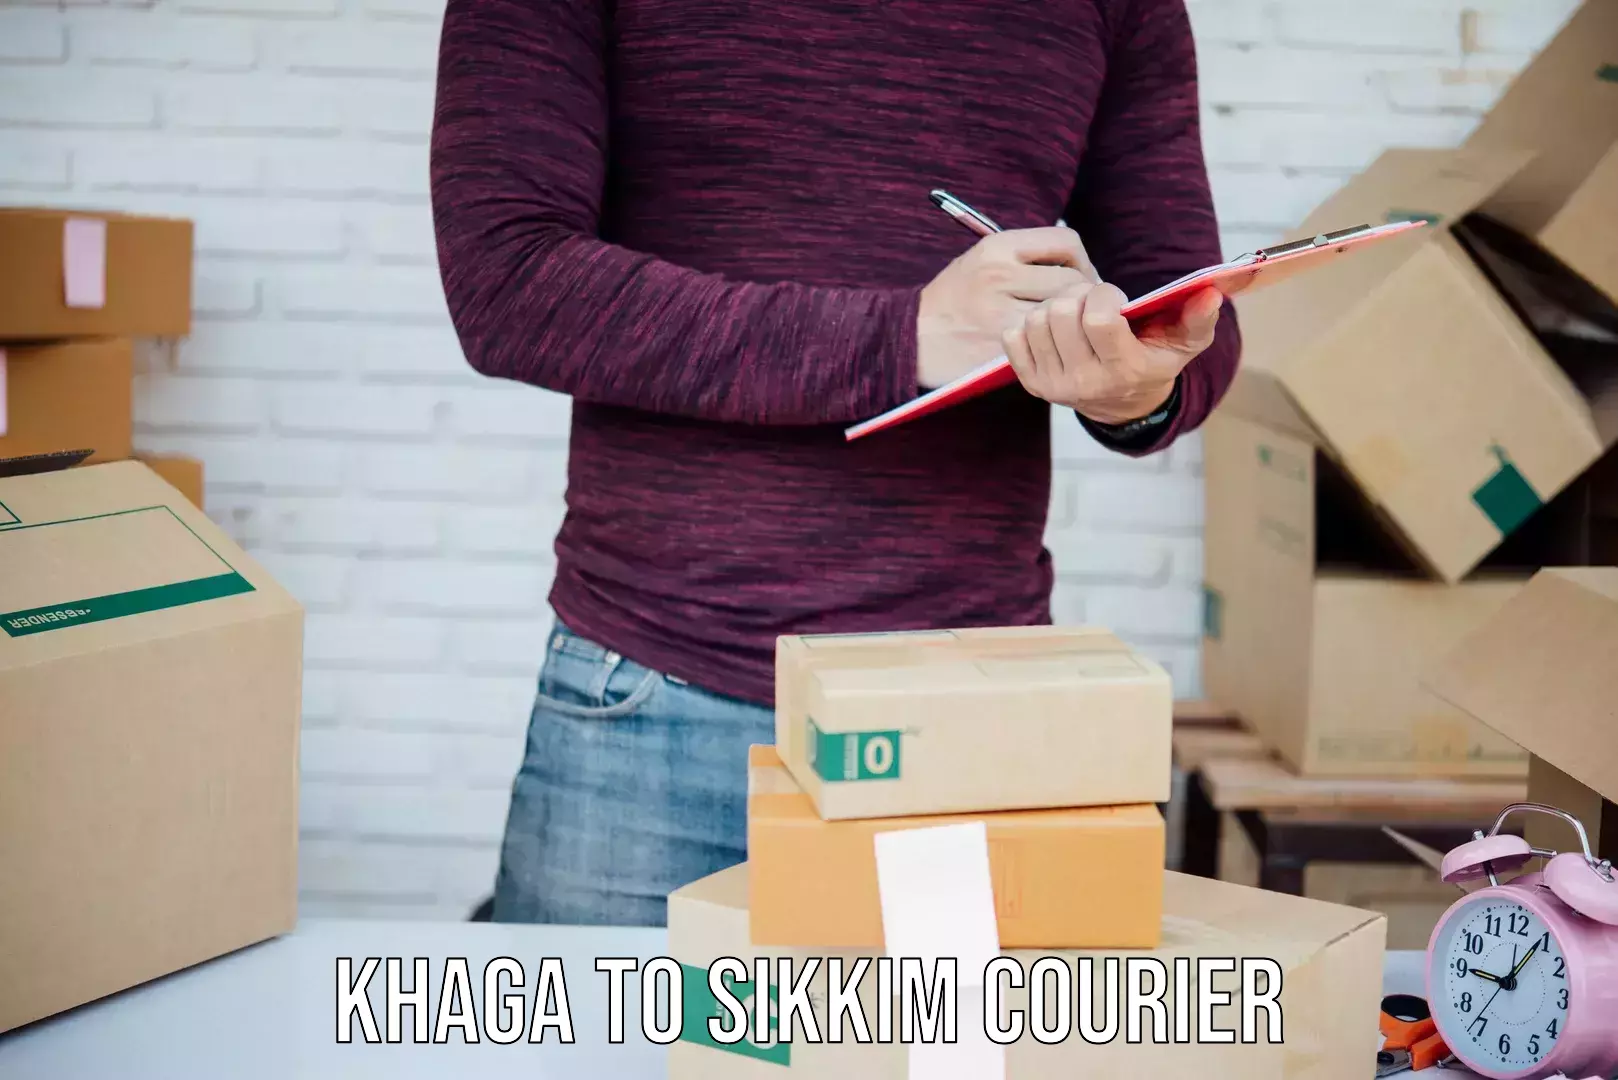 24-hour courier services Khaga to Sikkim